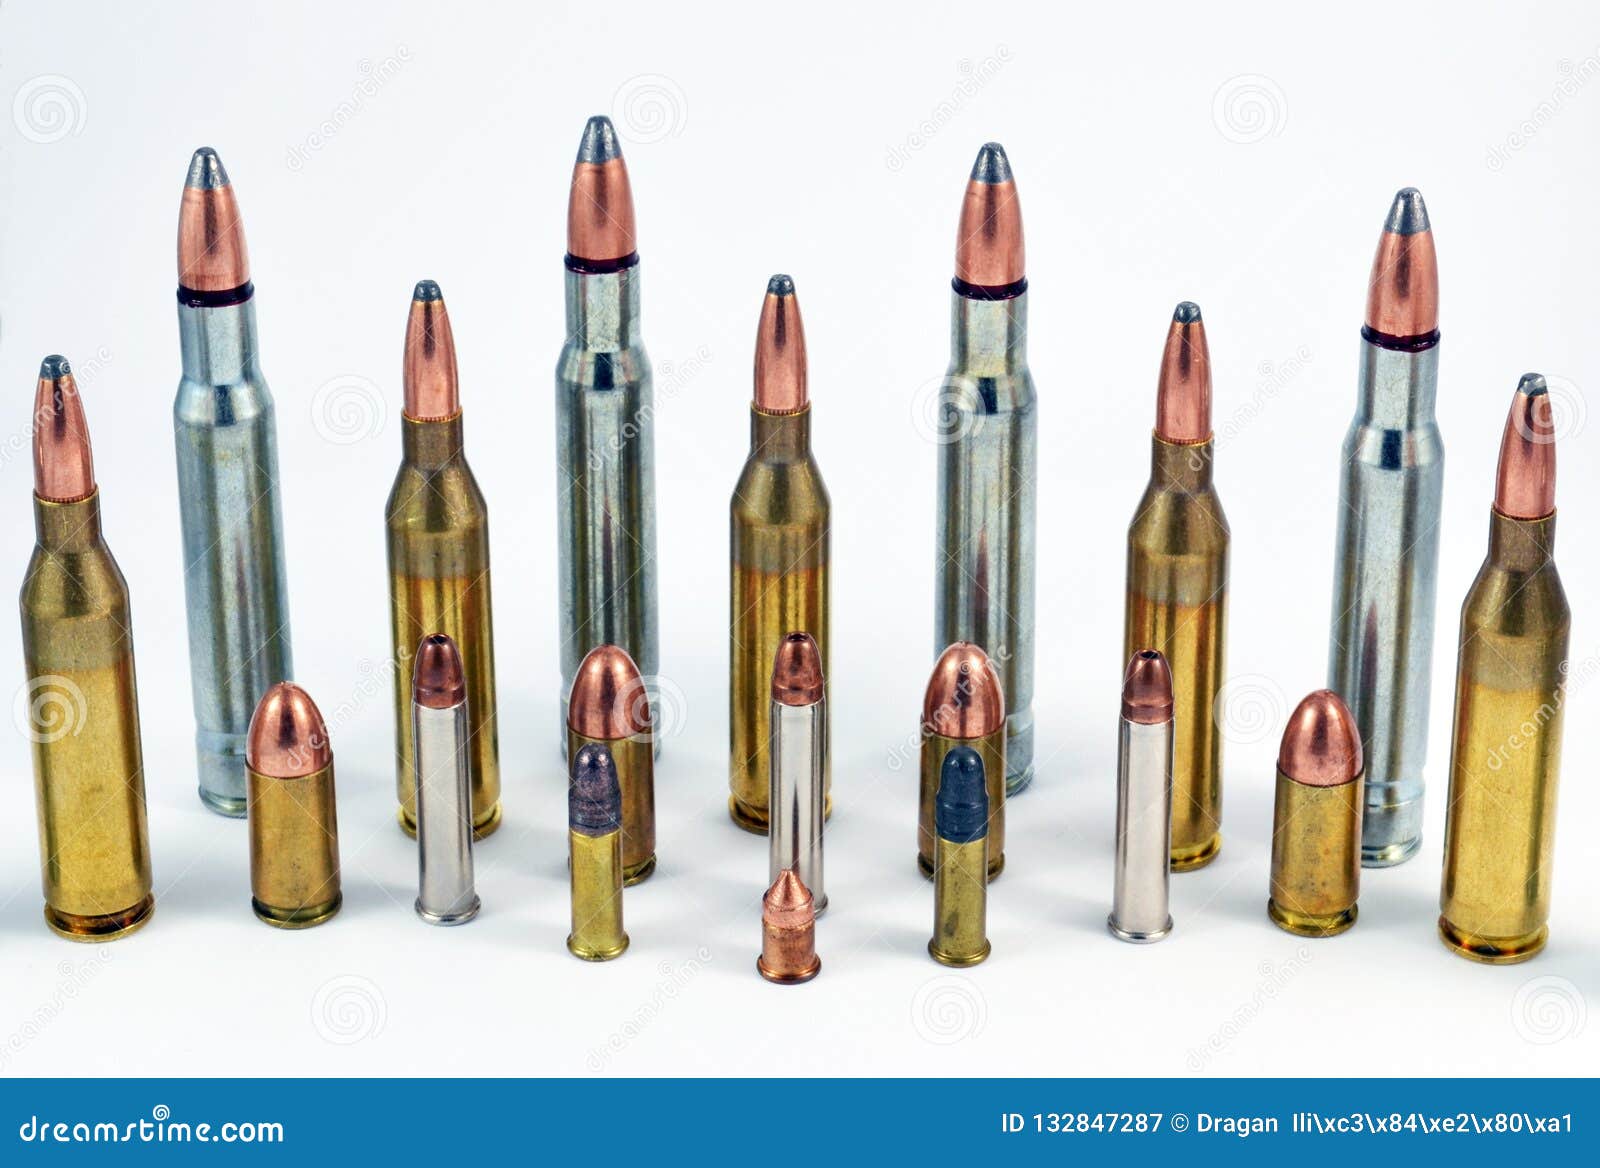 ammunition for handguns and rifles